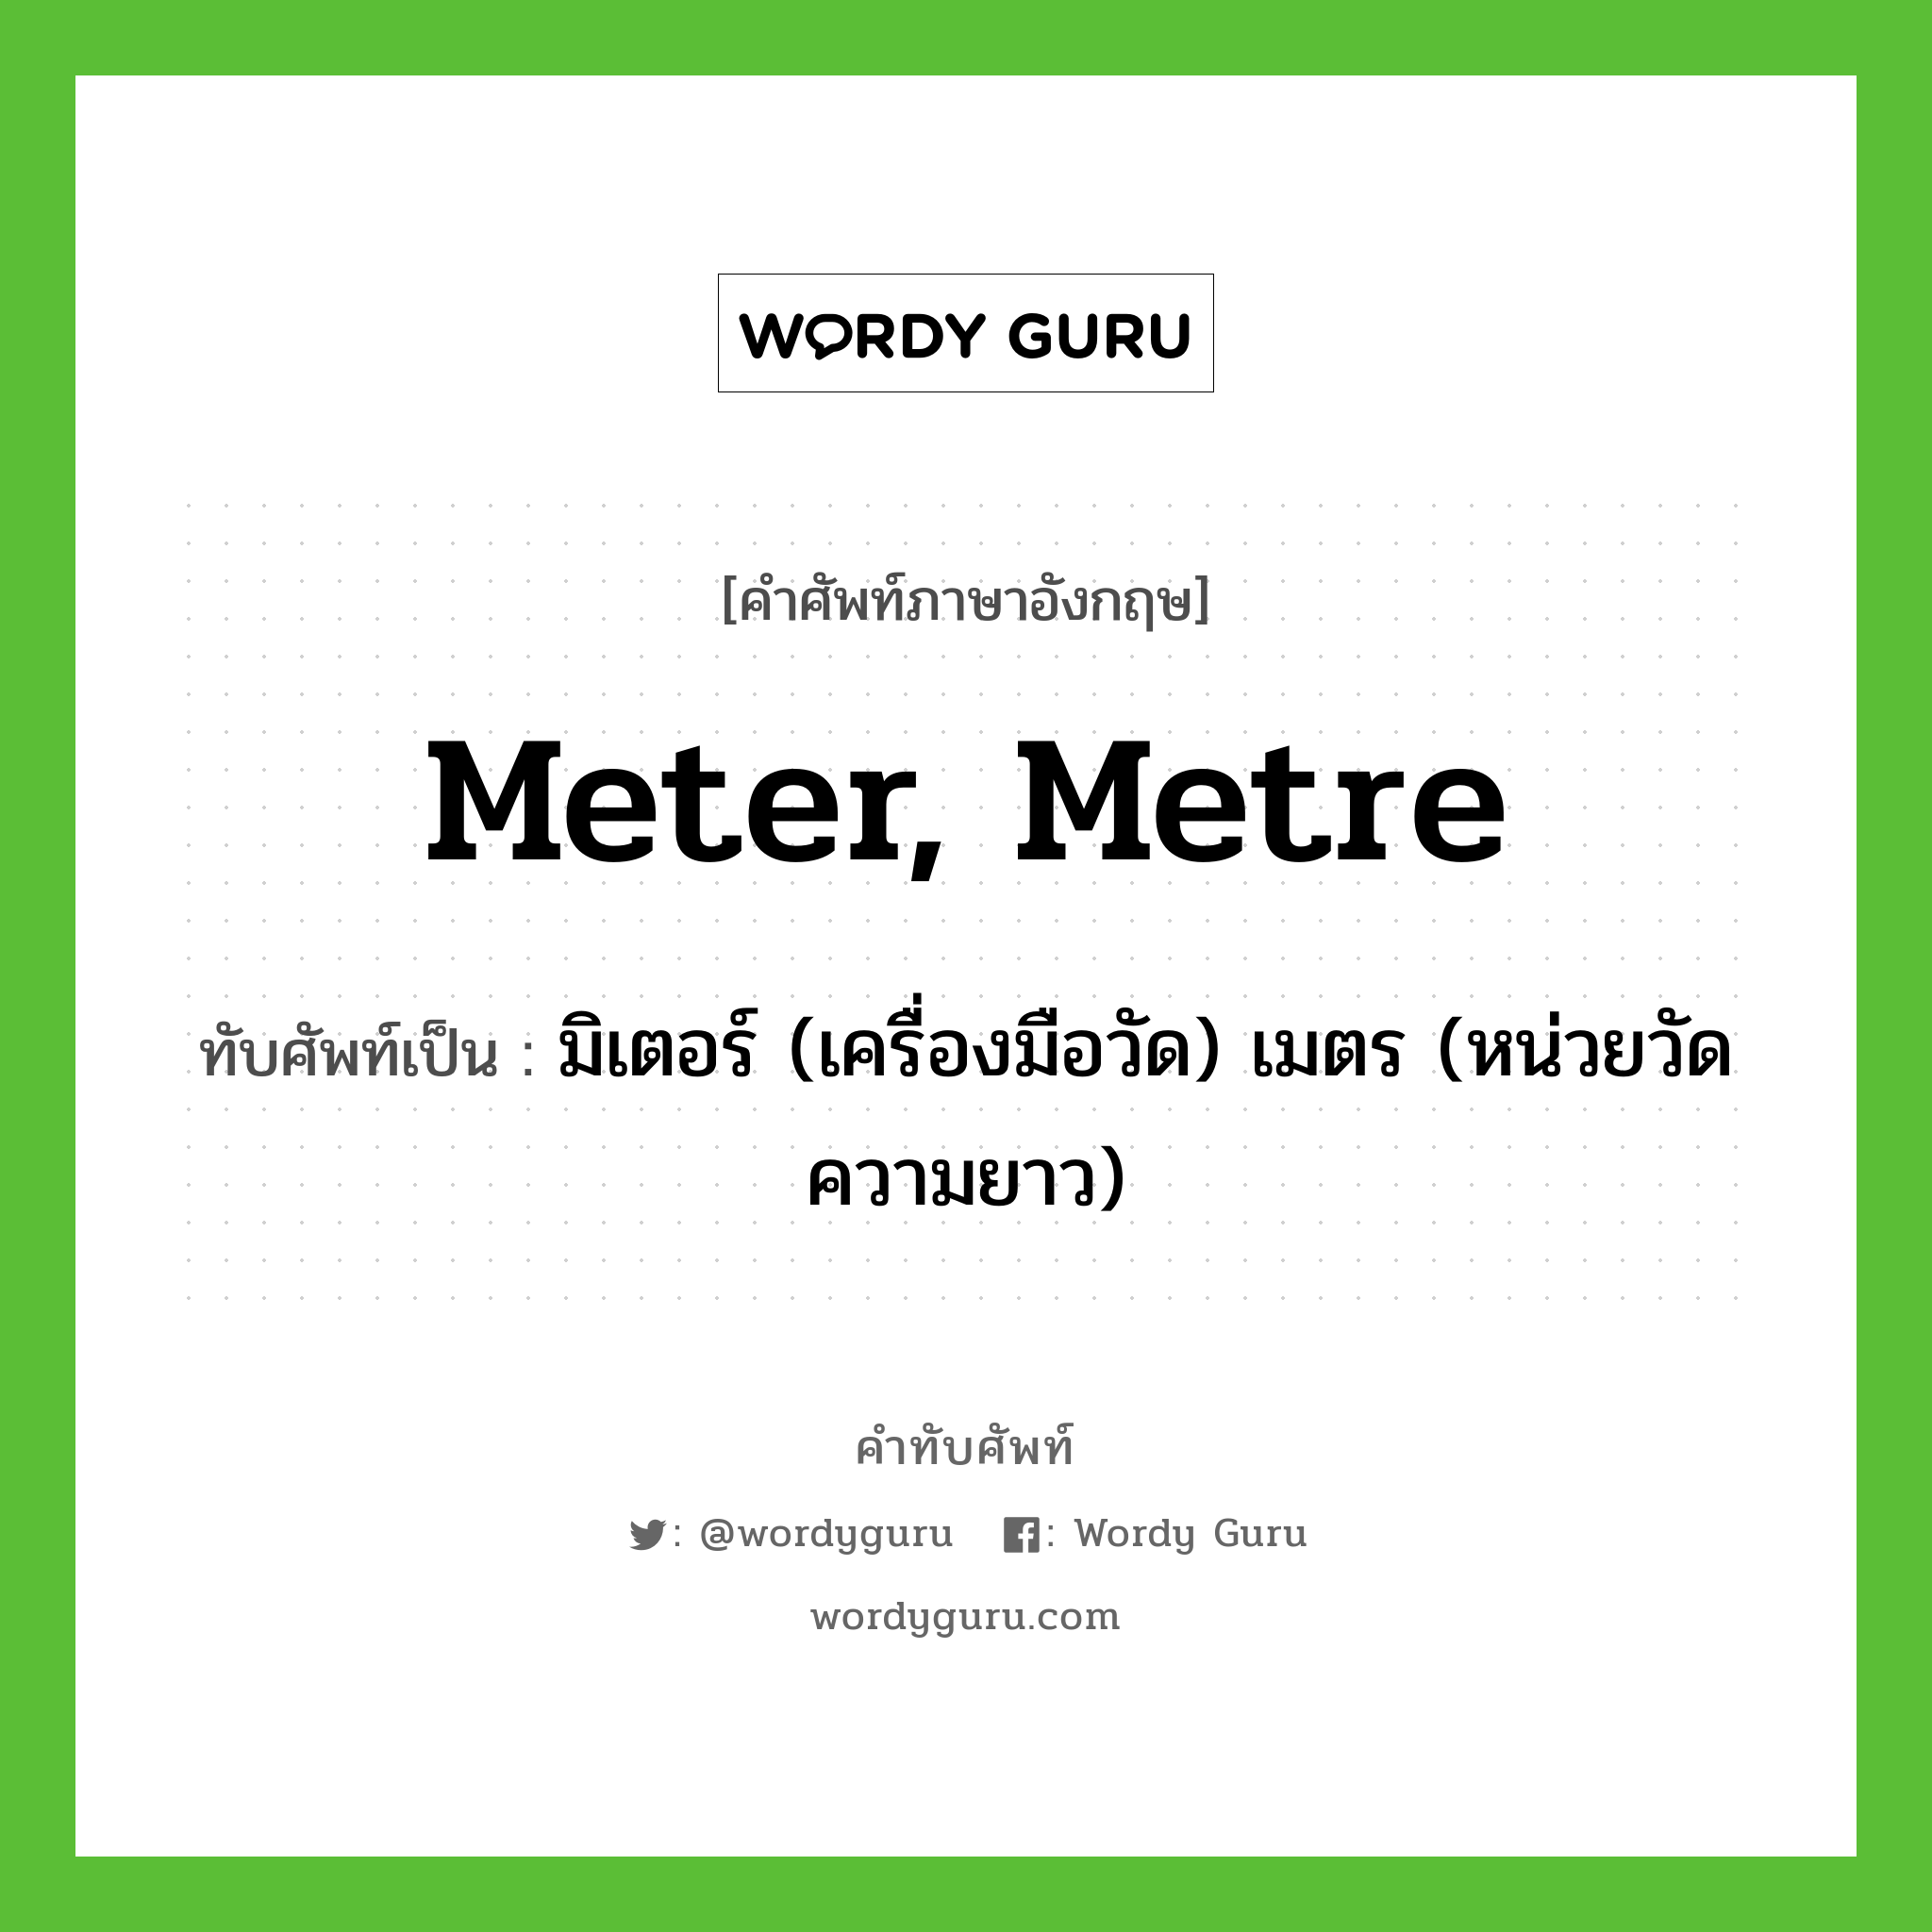 meter, metre เขียนเป็นคำไทยว่าอะไร?, คำศัพท์ภาษาอังกฤษ meter, metre ทับศัพท์เป็น มิเตอร์ (เครื่องมือวัด) เมตร (หน่วยวัดความยาว)